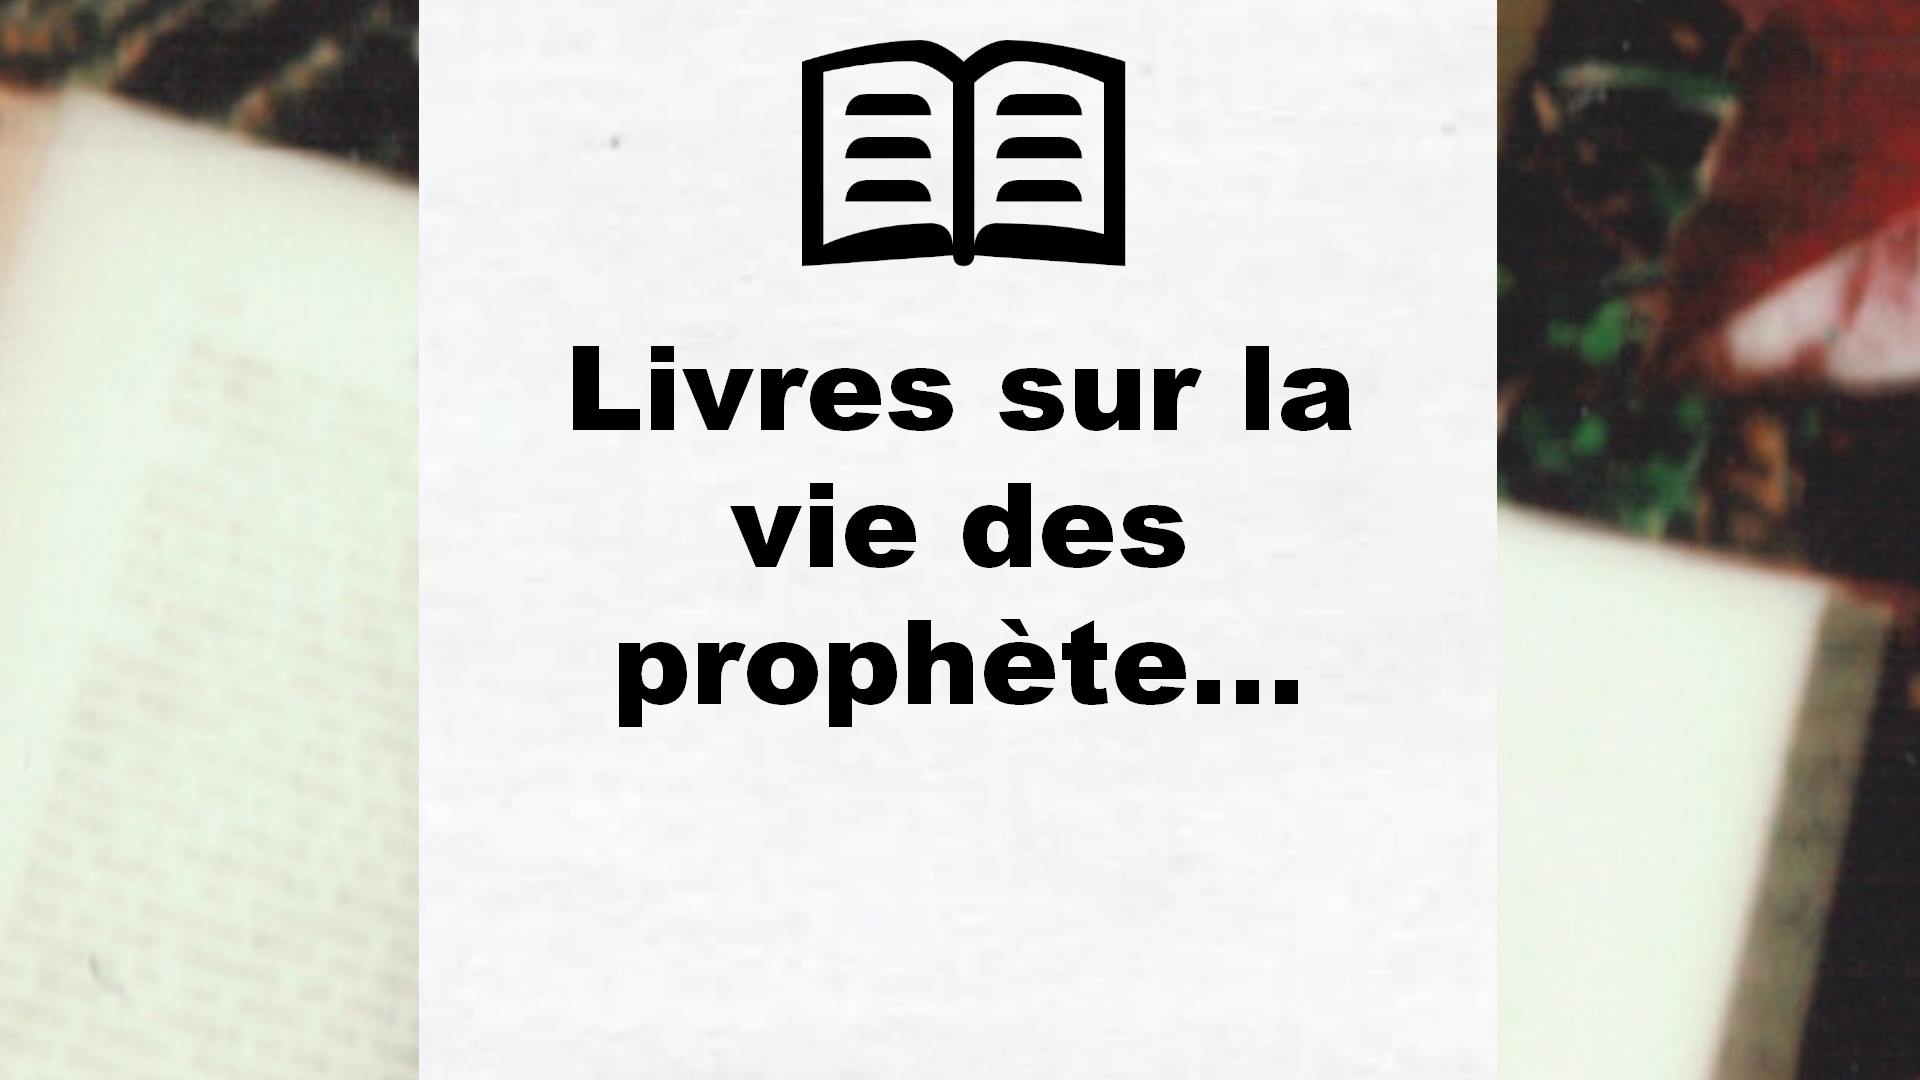 Livres sur la vie des prophètes